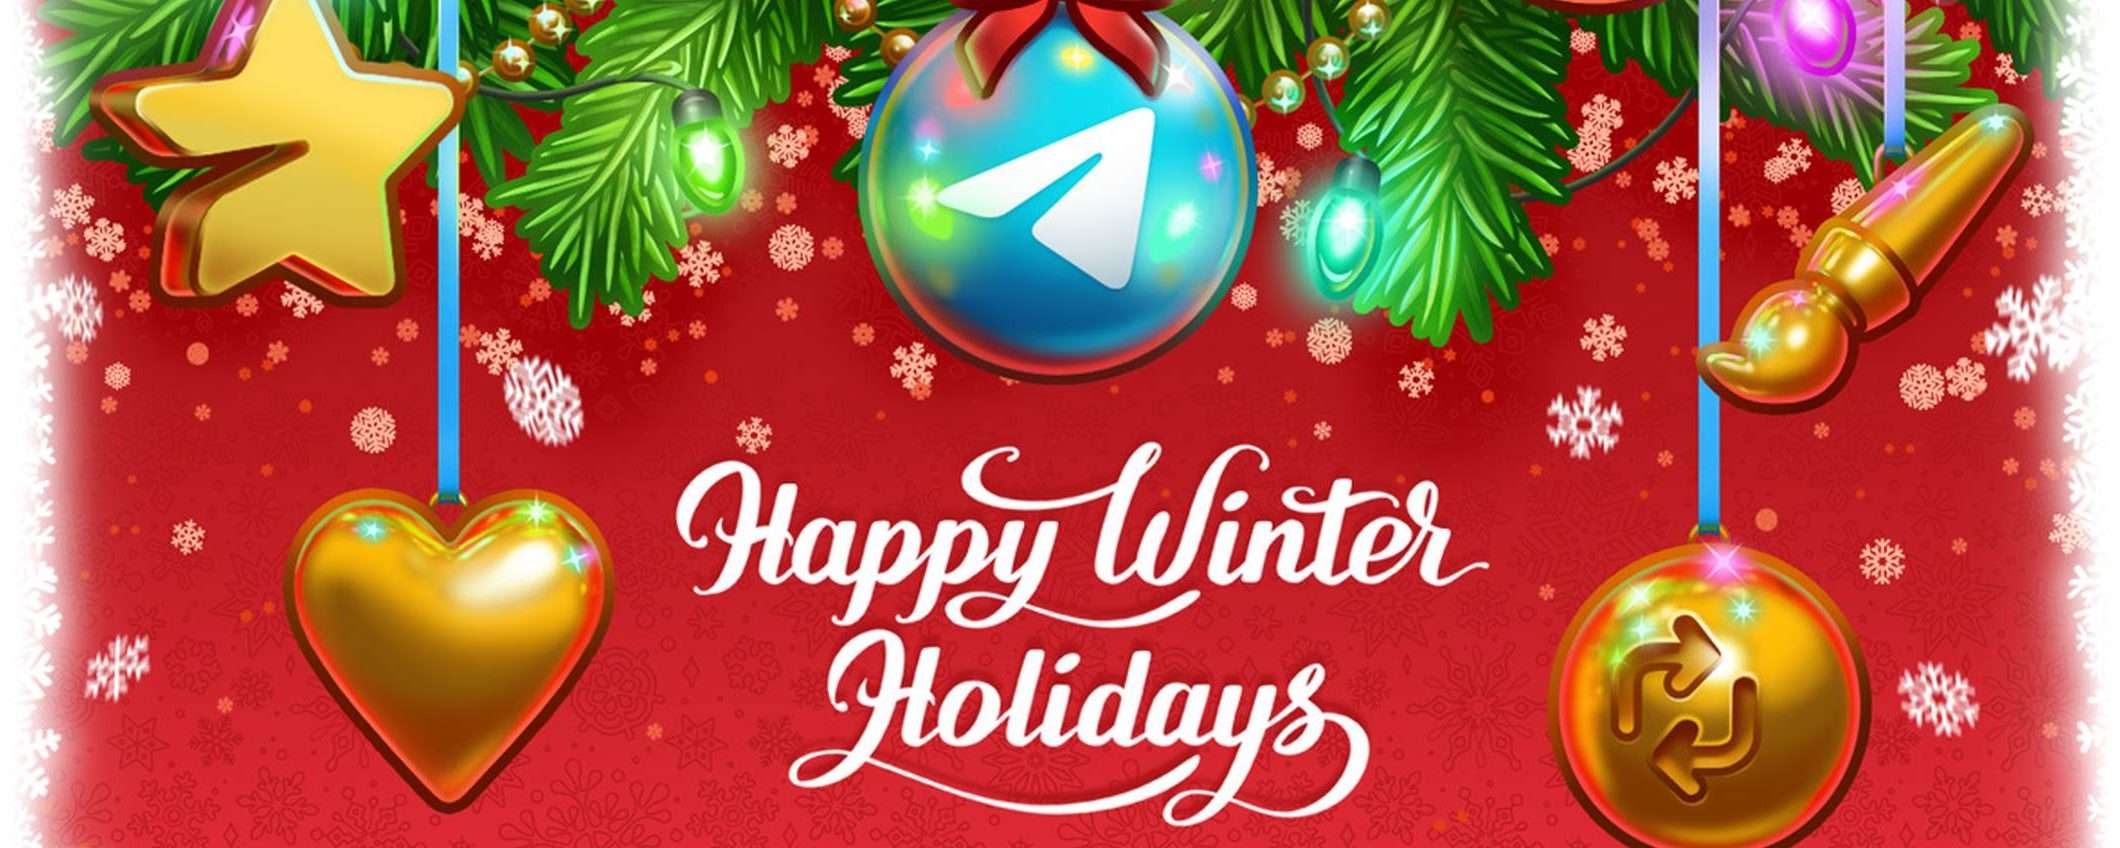 Telegram: molte novità nell'update di Natale